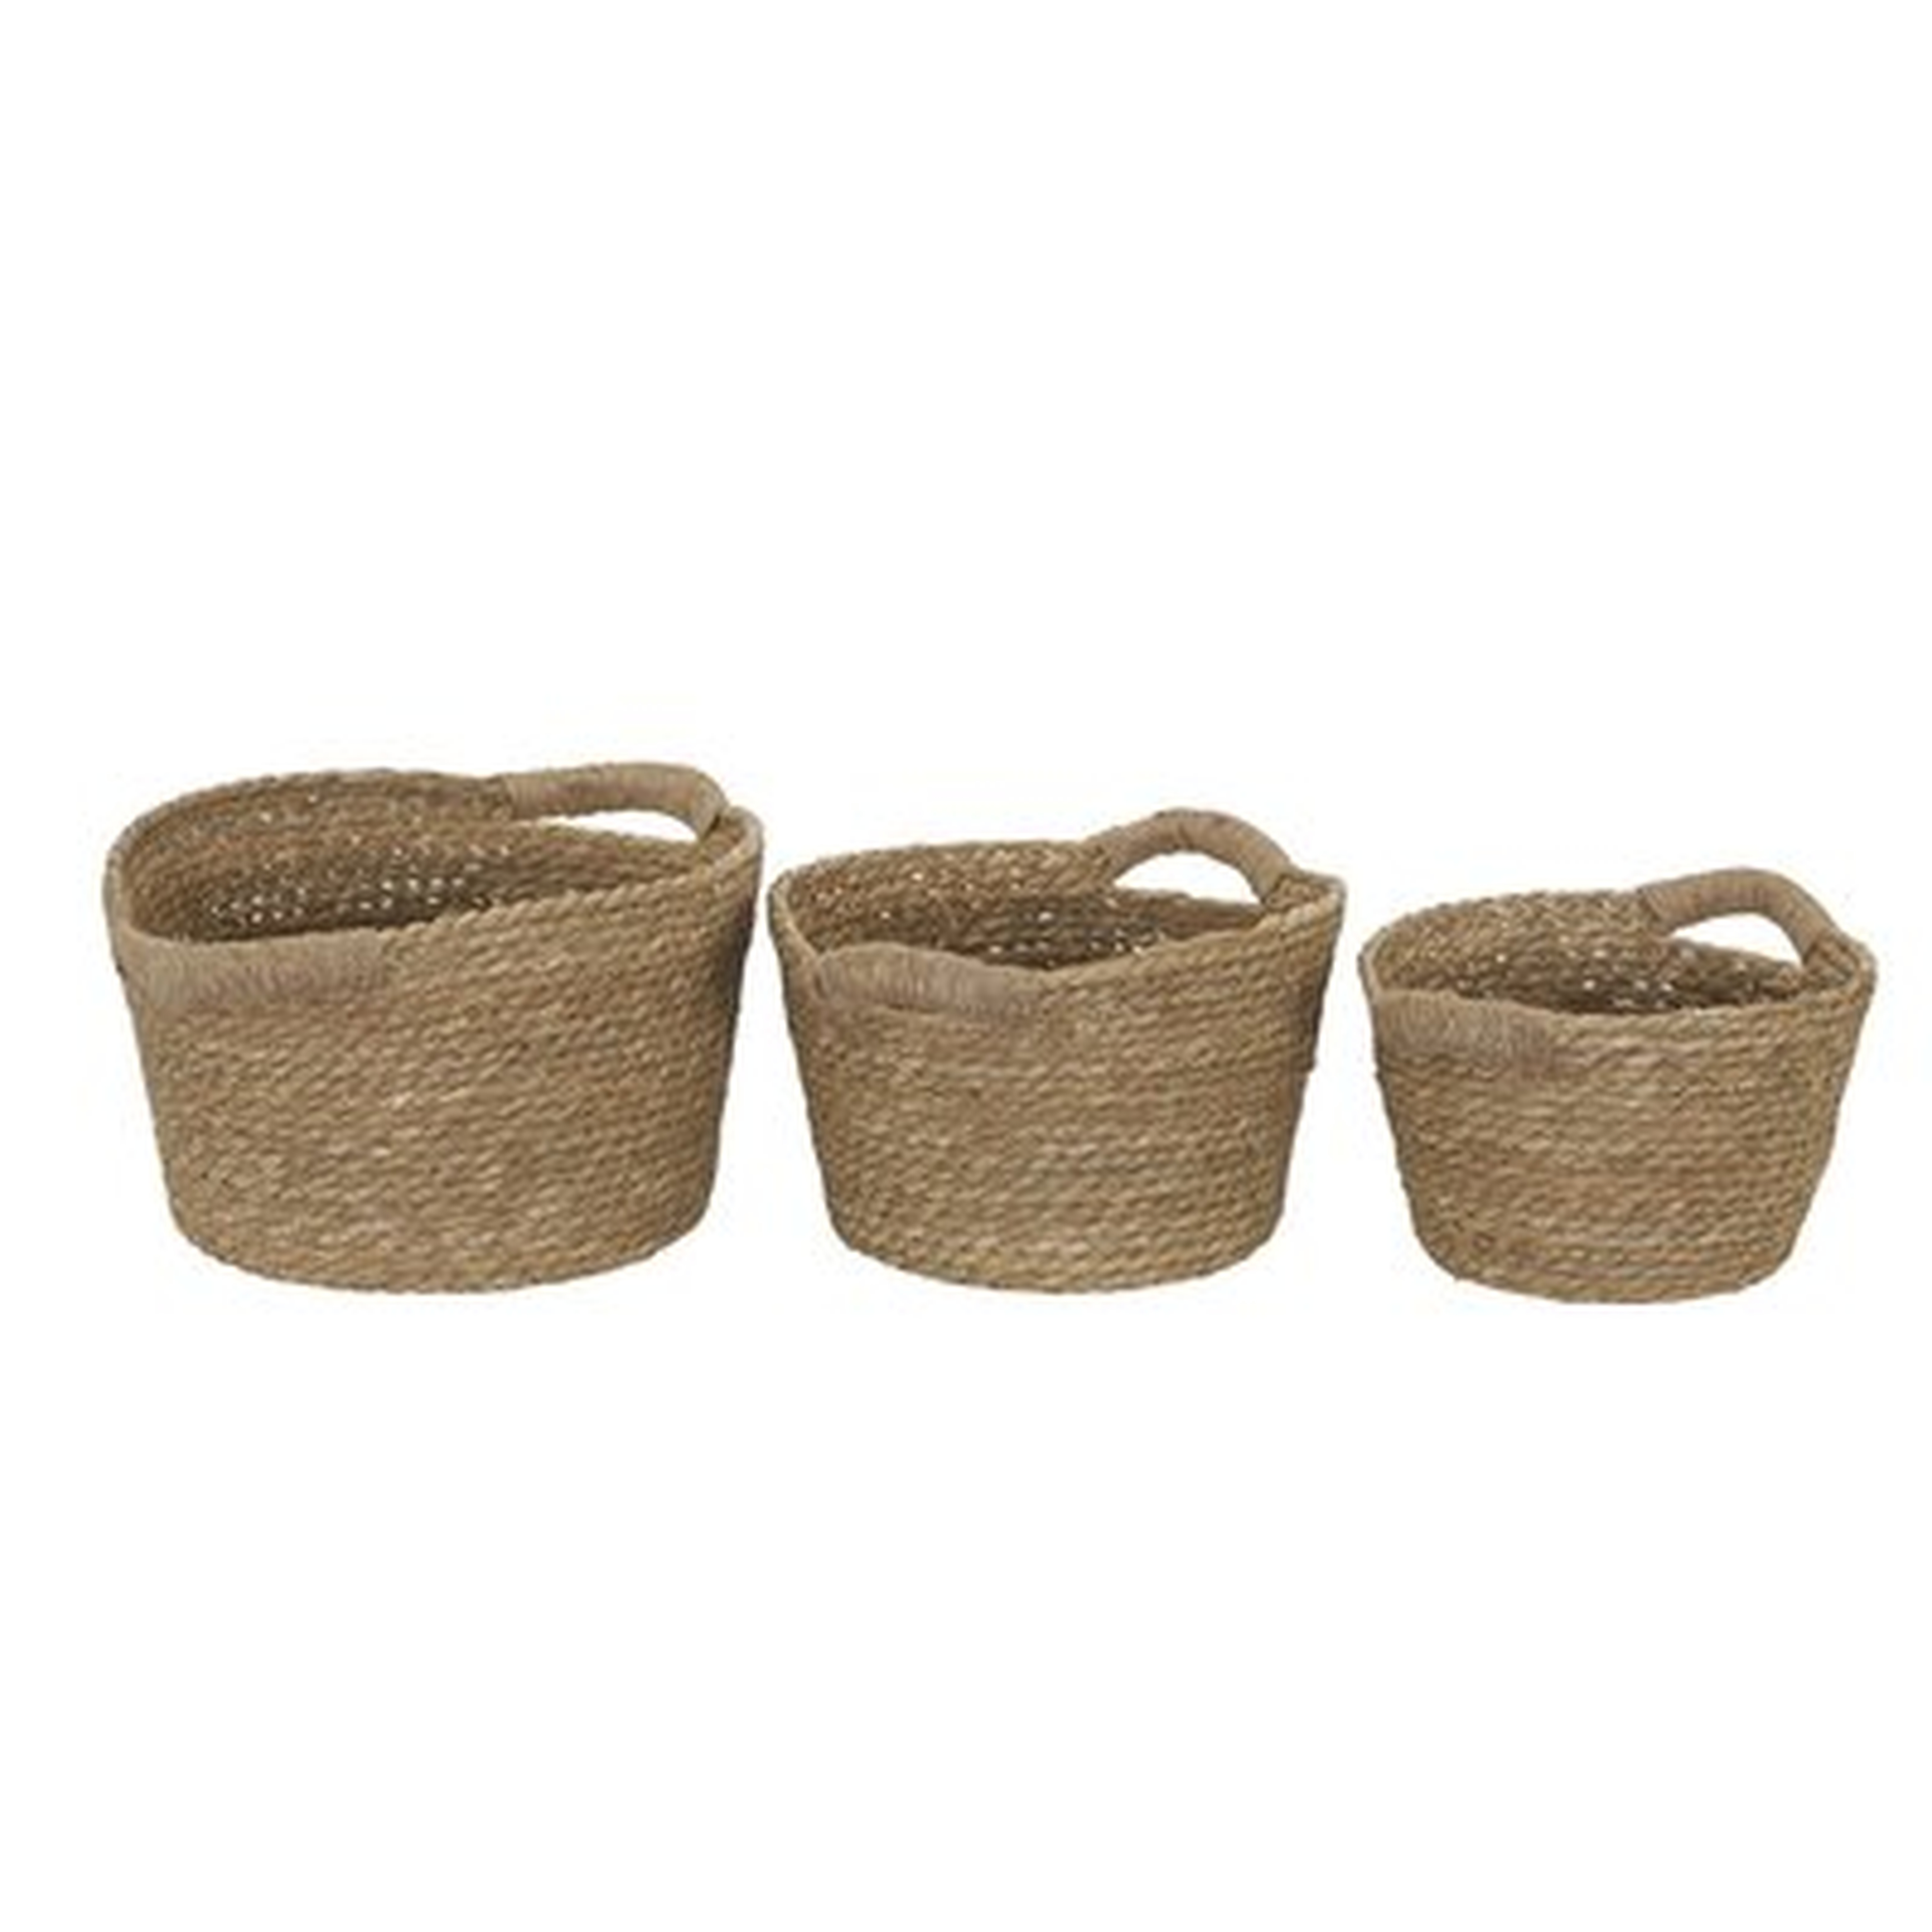 3 Piece Cattail Wicker Storage Basket Set - Wayfair